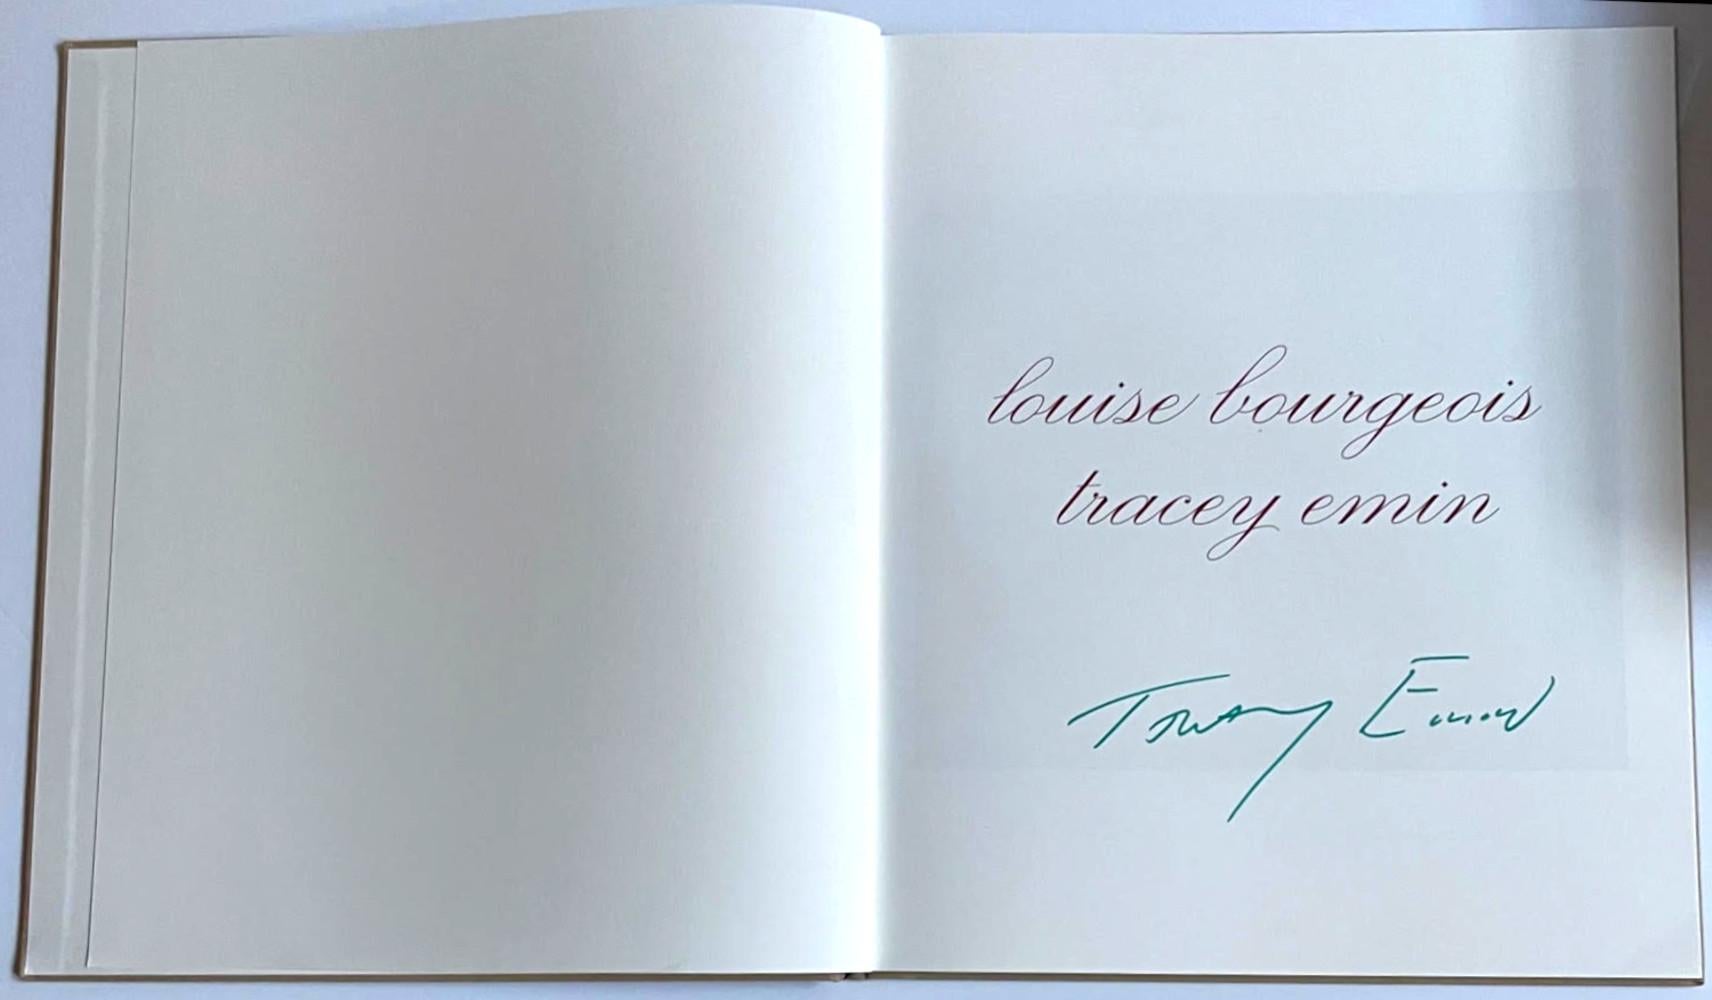 Do Not Abandon Me (signé à la main avec un marqueur vert par Tracey Emin) - Print de Louise Bourgeois & Tracey Emin